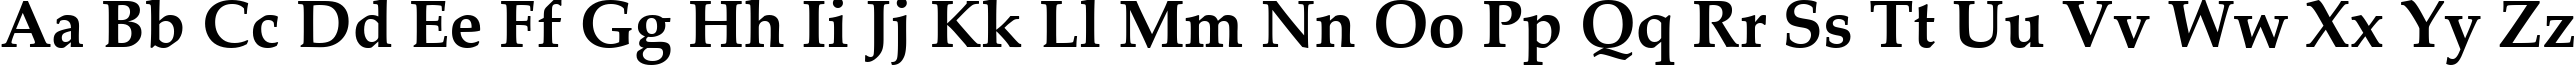 Пример написания английского алфавита шрифтом Palatino Linotype Bold